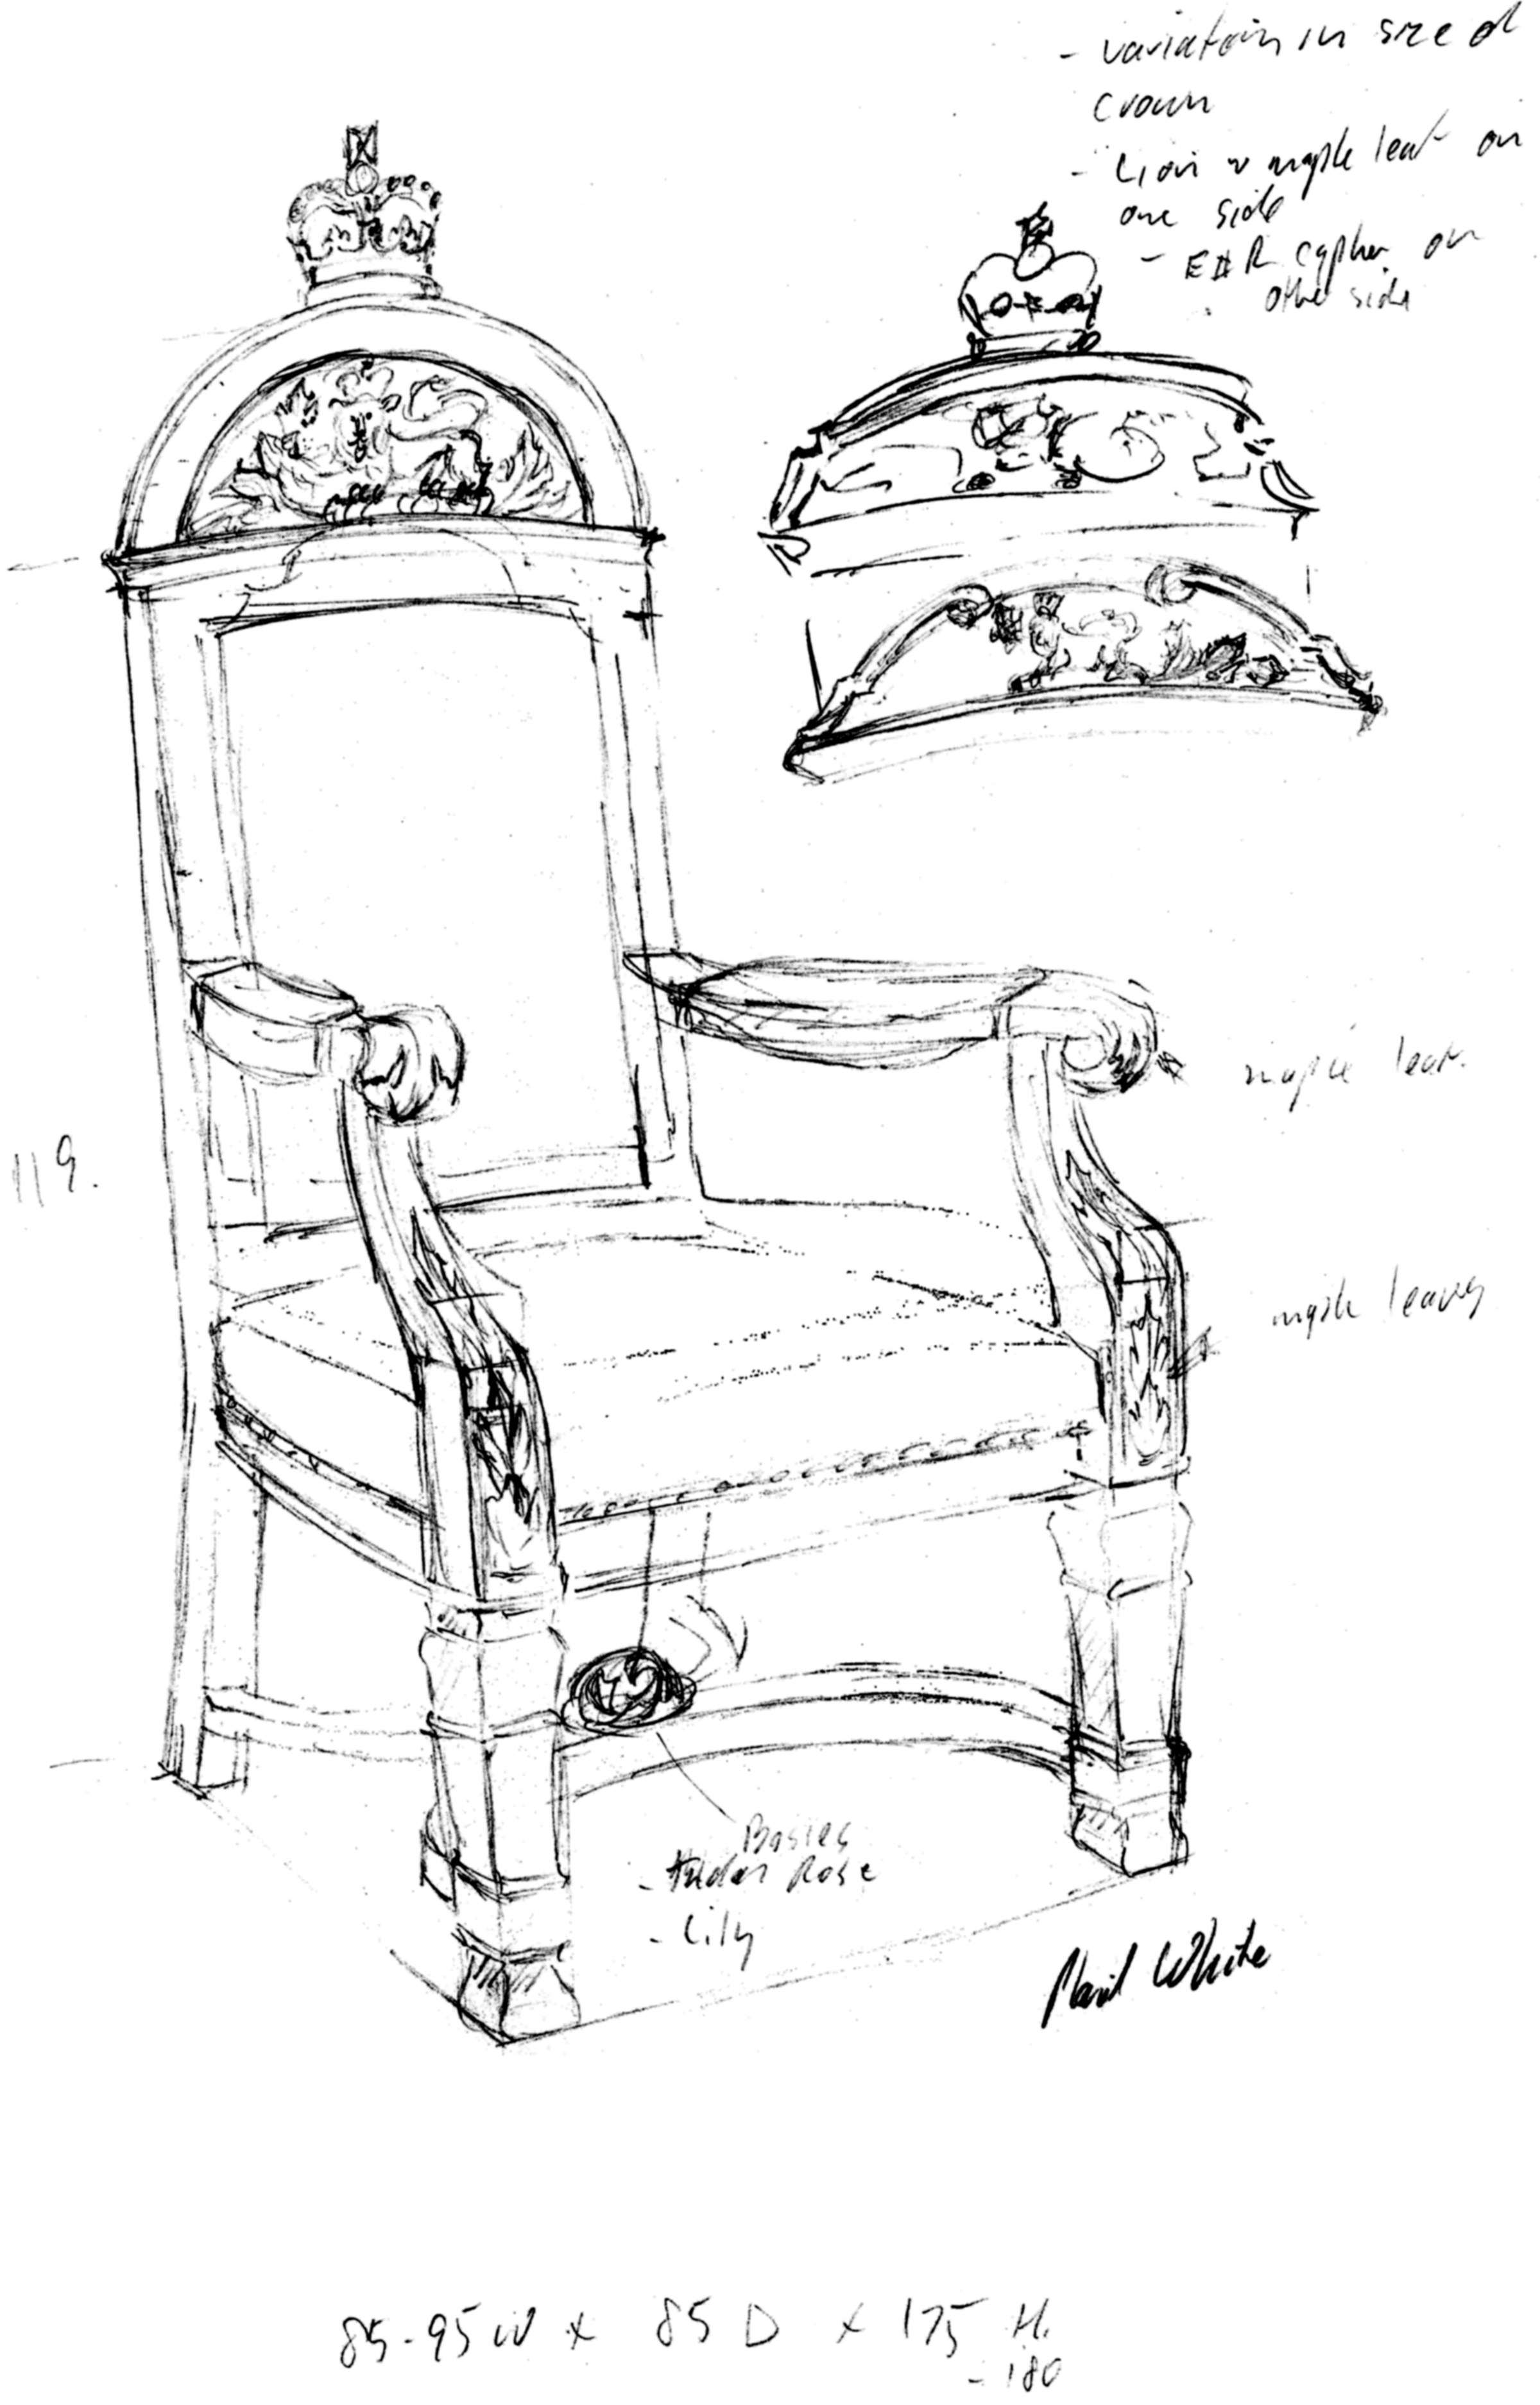 L’une des esquisses des trônes faites par le sculpteur du Dominion, Phil White, montre que des détails du style Beaux Arts y ont été intégrés afin qu’ils s’harmonisent à l’architecture de l’édifice du Sénat du Canada, qui date du début du 20e siècle.